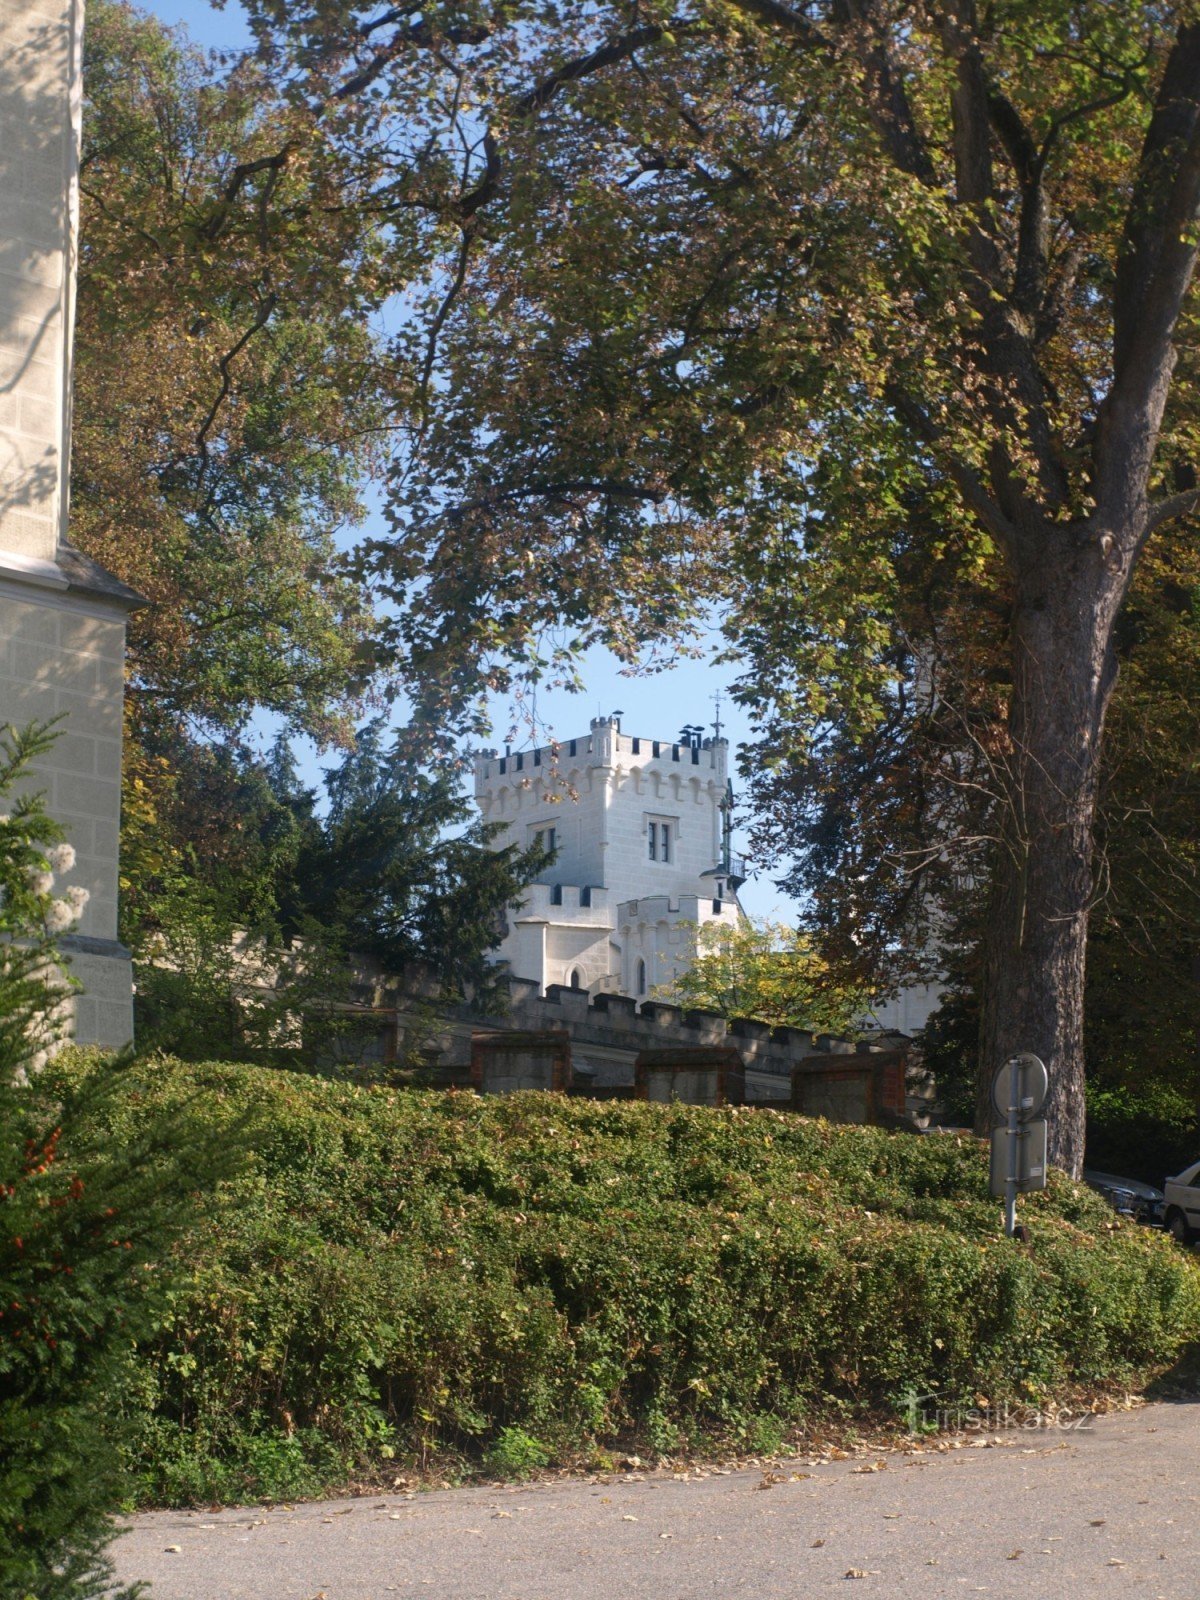 Hluboká nad Vltavou Chateau